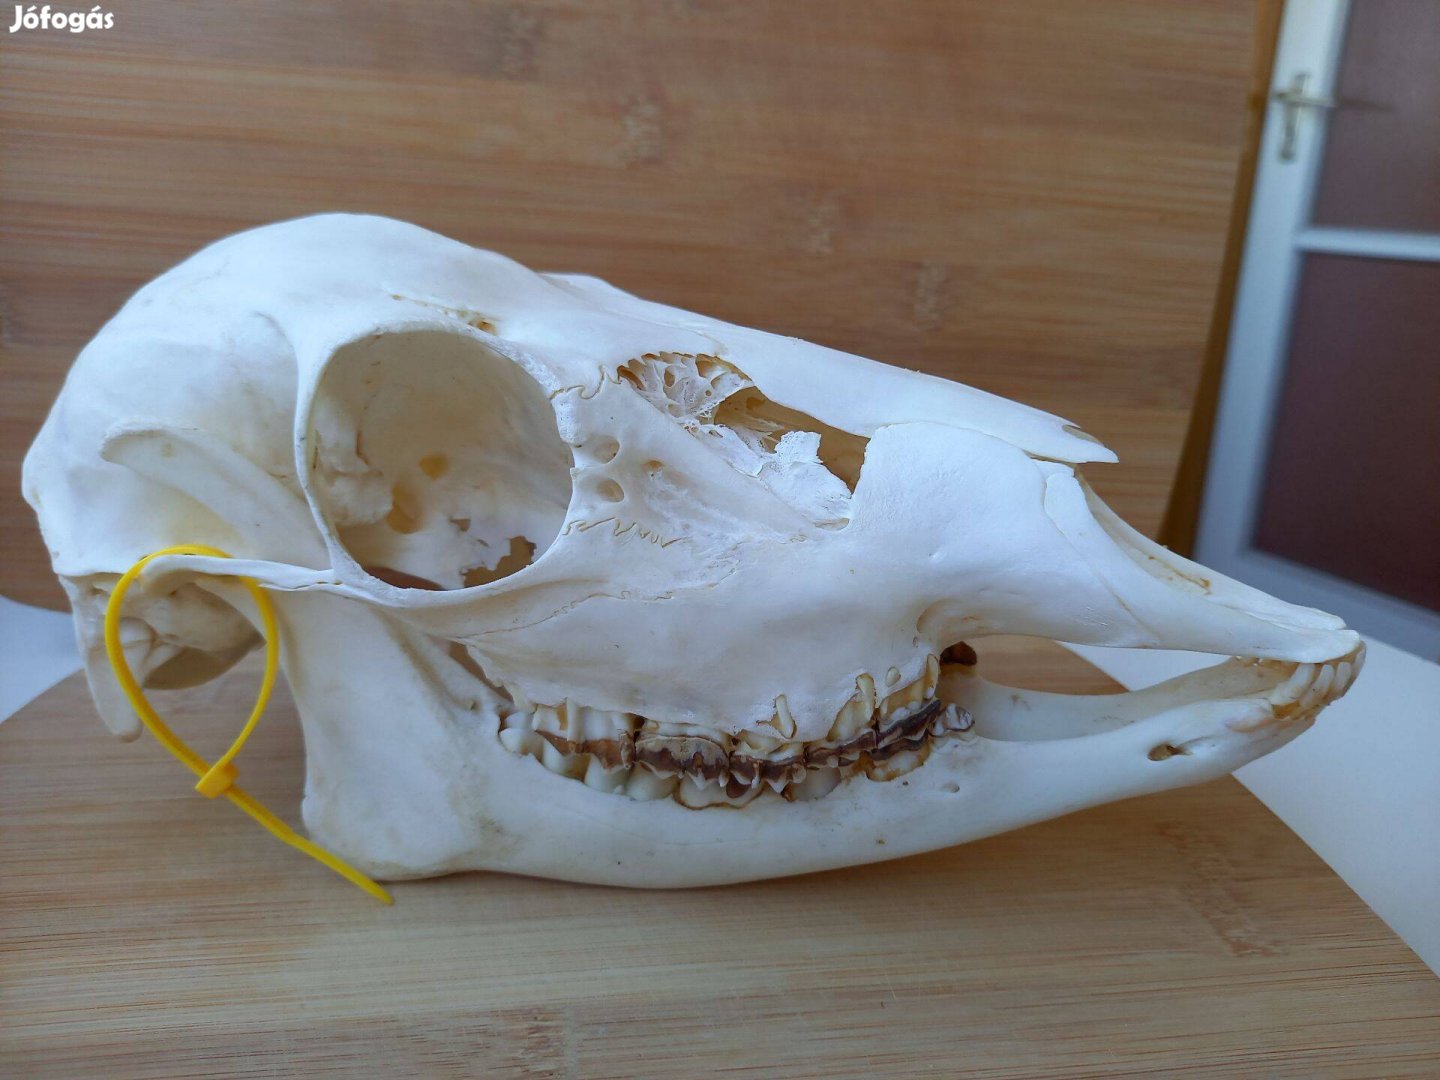 Dámszarvas tehén trófea preparált koponya